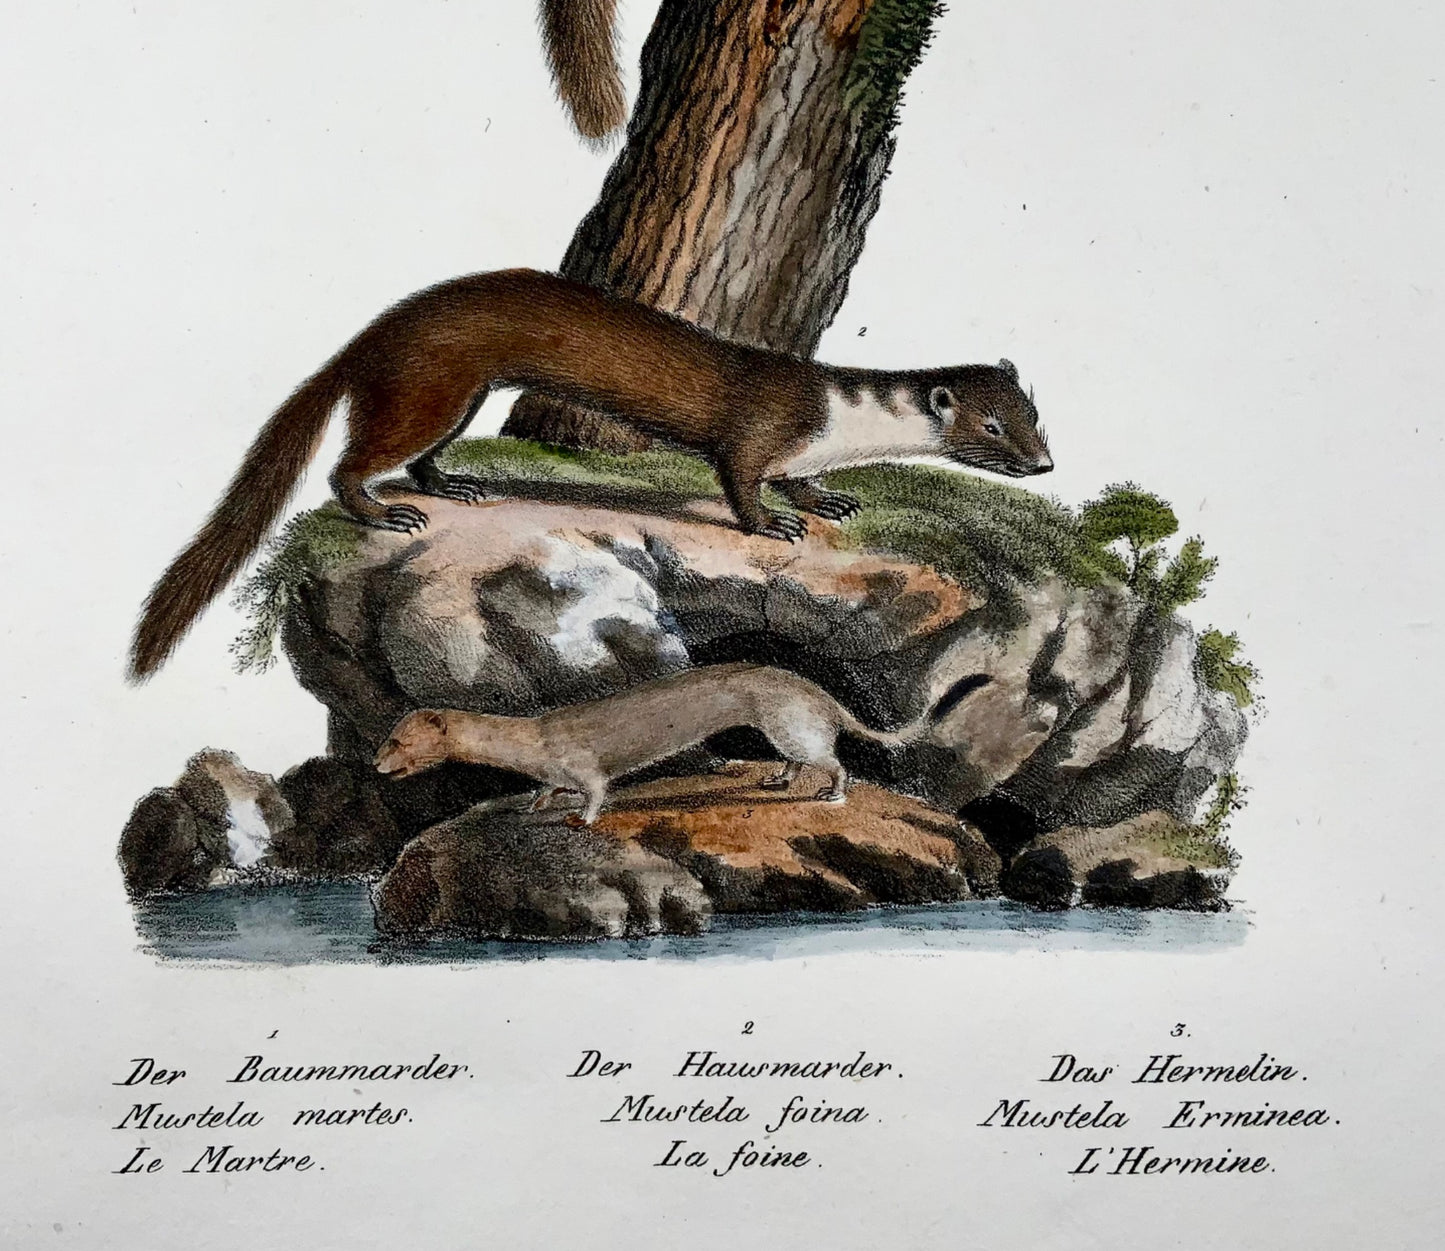 1830 Donnola, Mustela, Mammiferi, Schinz, colorati a mano, folio, litografia